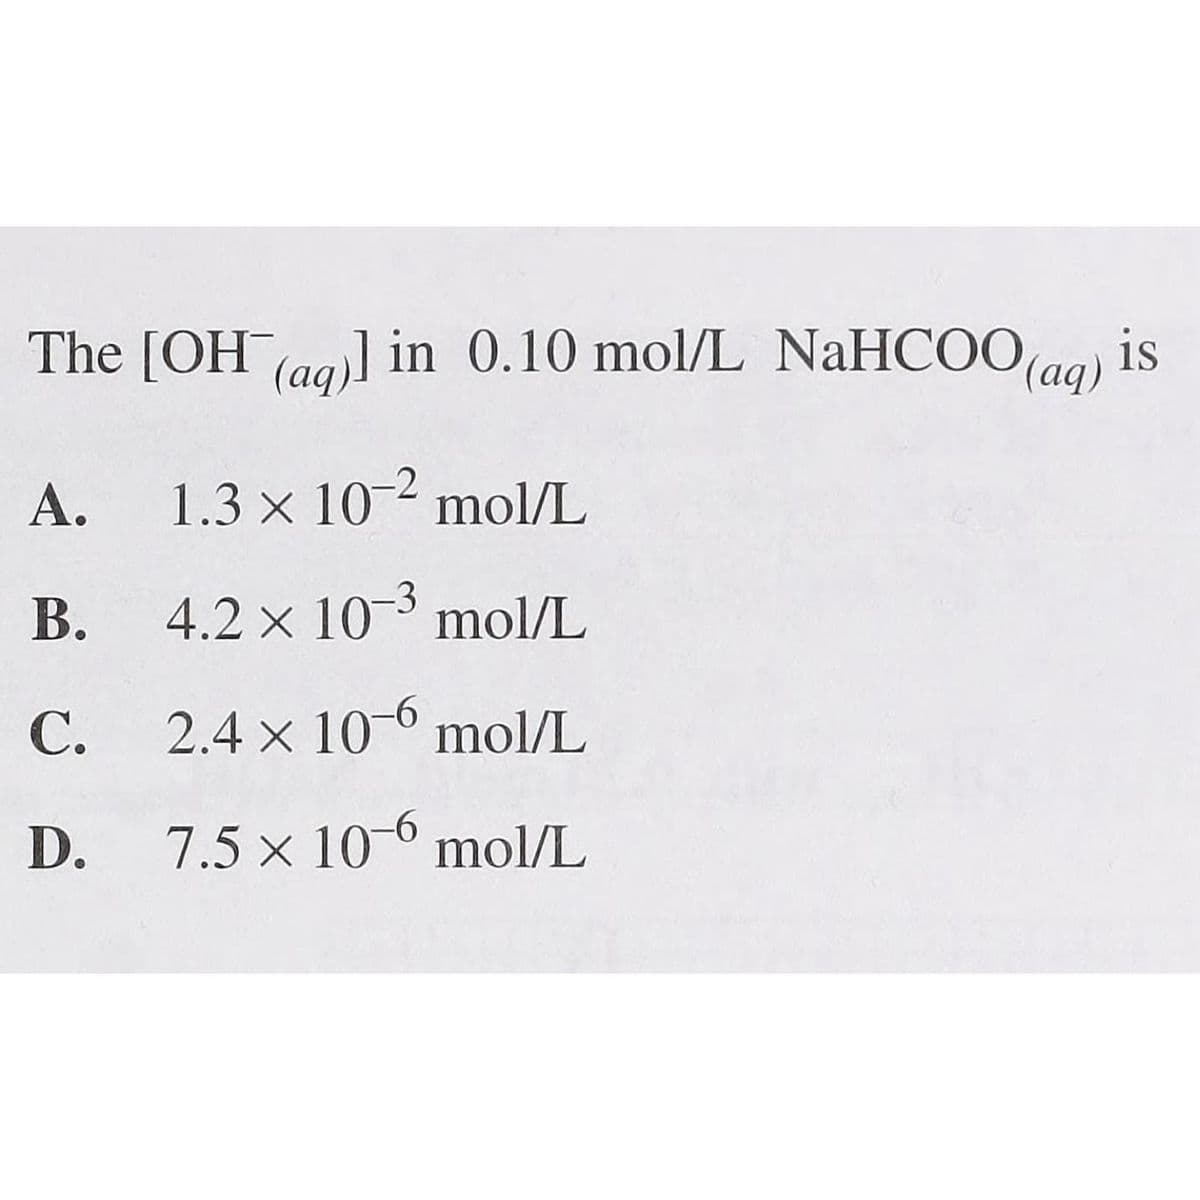 The [OH (aq)] in 0.10 mol/L NaHCOO (aq) is
A.
1.3 × 10-2 mol/L
B.
4.2 x 10-3 mol/L
C.
2.4 x 10-6 mol/L
D.
7.5 x 10-6 mol/L